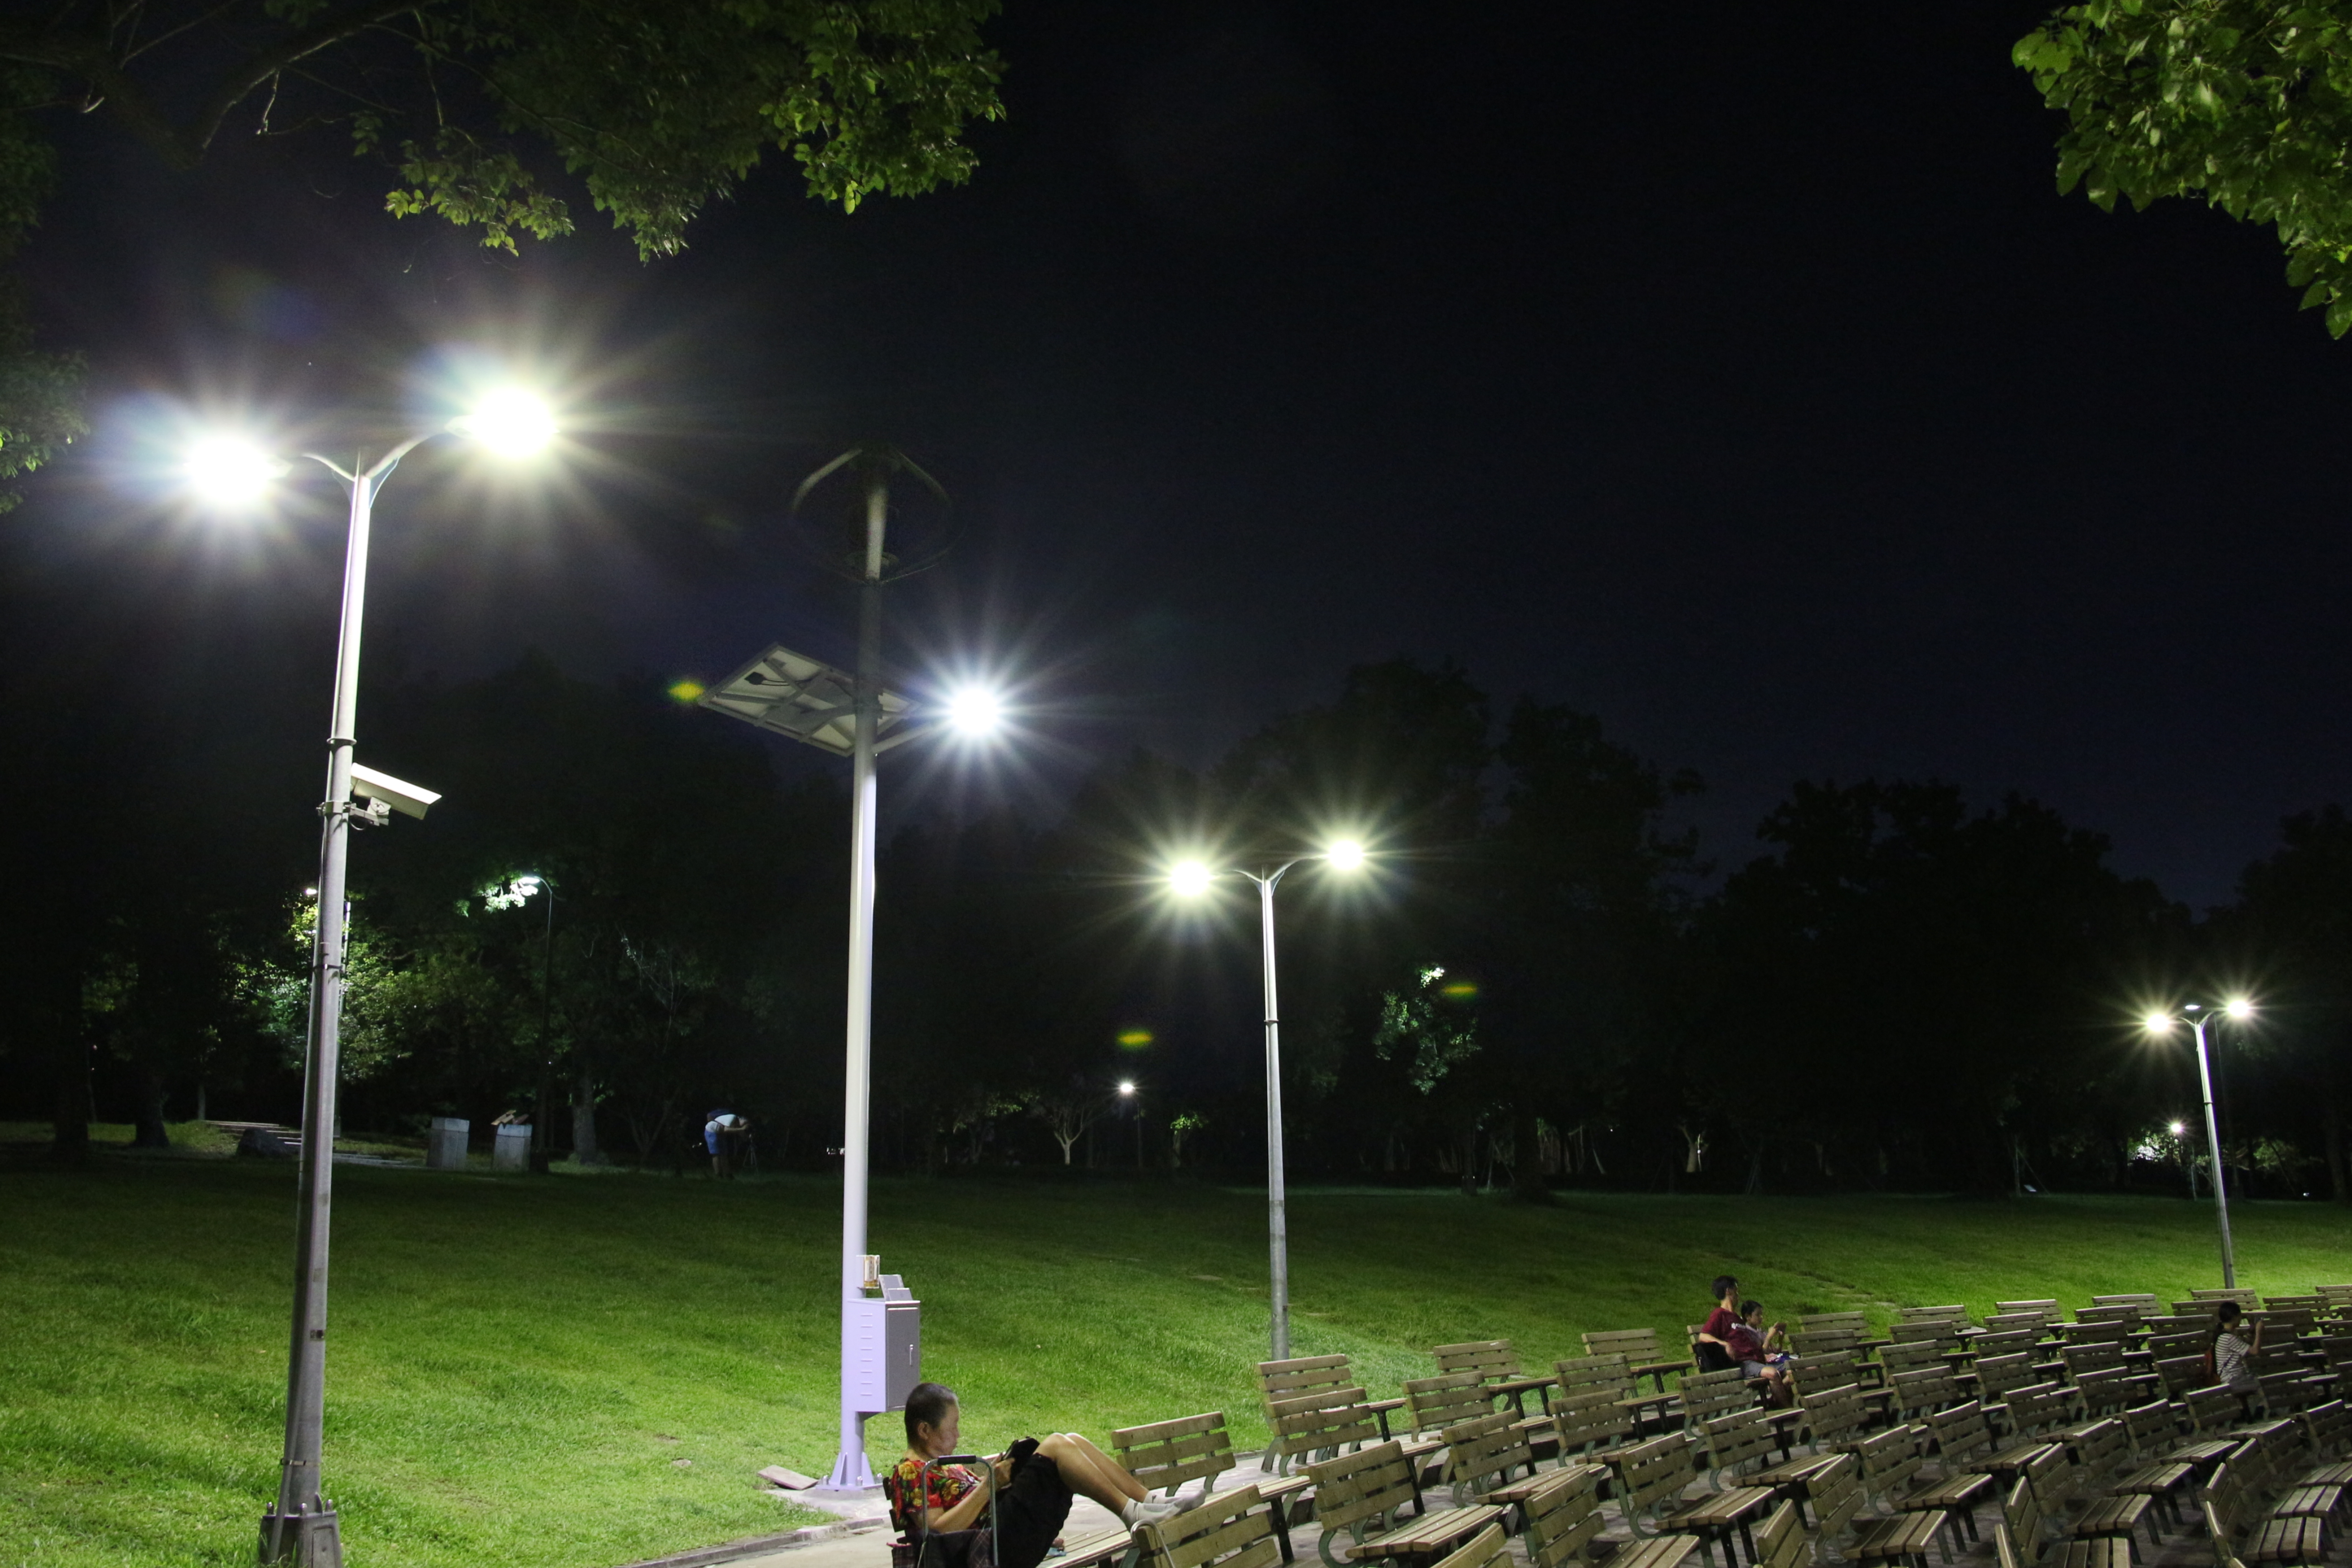 圖8.大安森林公園音樂臺設置風光互補路燈及行動裝置充電系統夜間照片